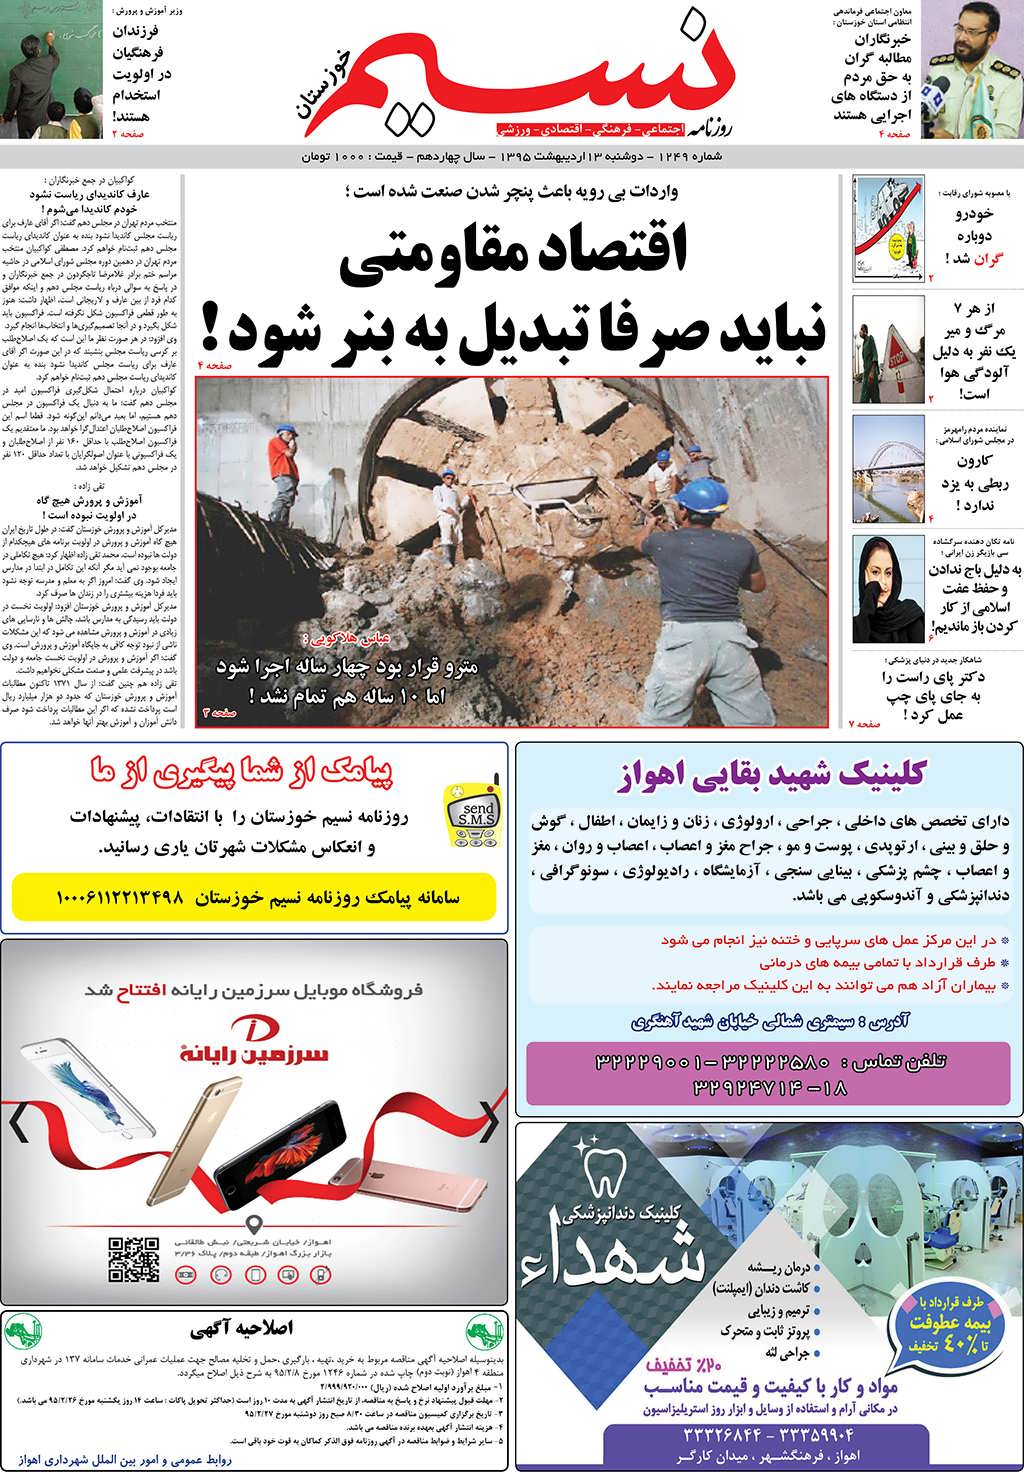 صفحه اصلی روزنامه نسیم شماره 1249